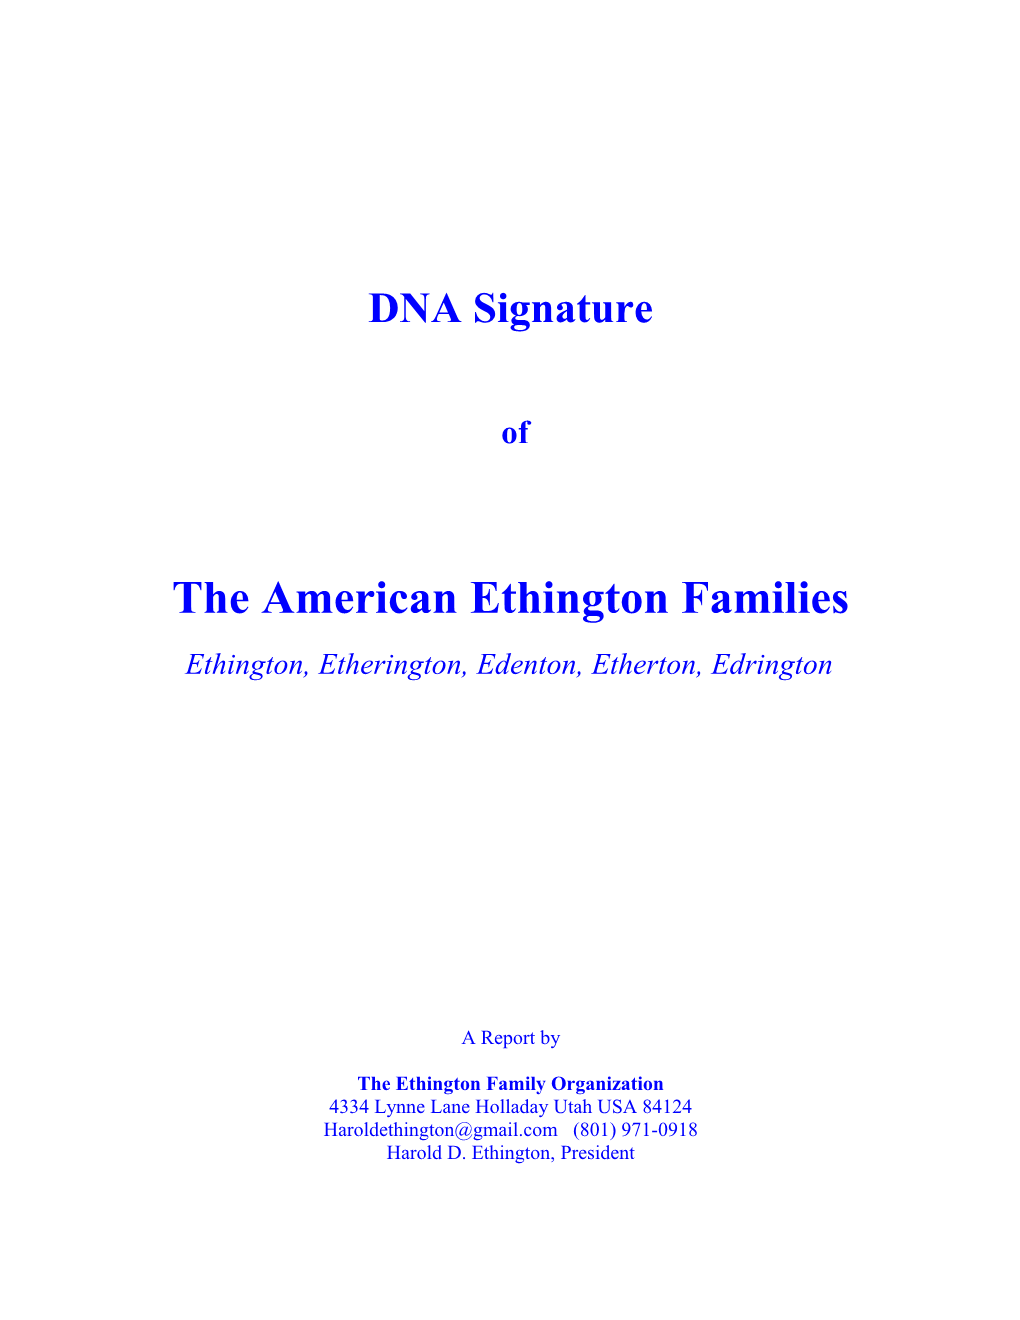 DNA Signature Of